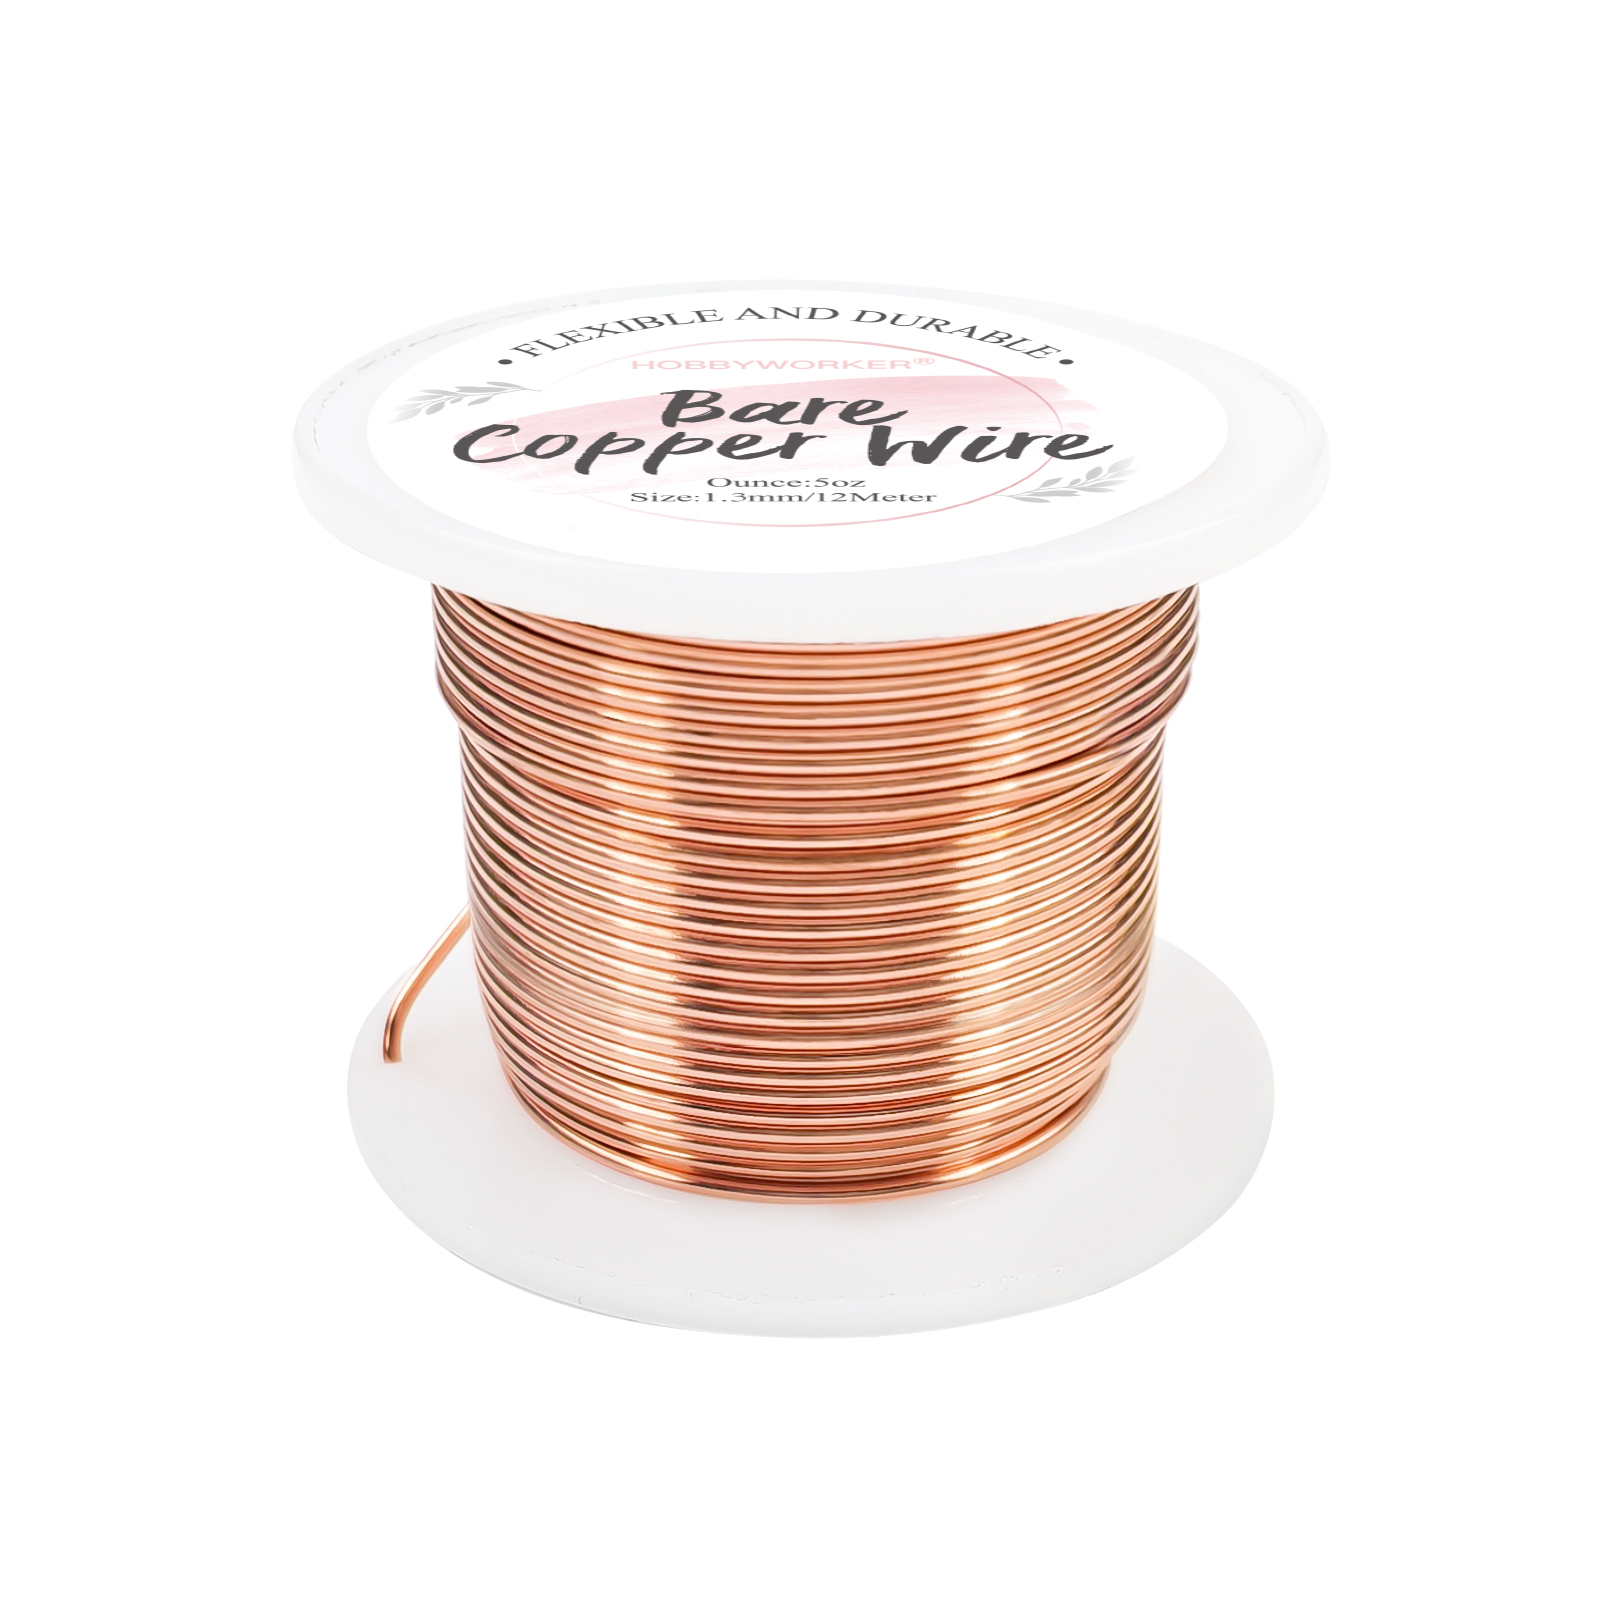 Copper Wire, Bare, 18 Gauge, 4 oz